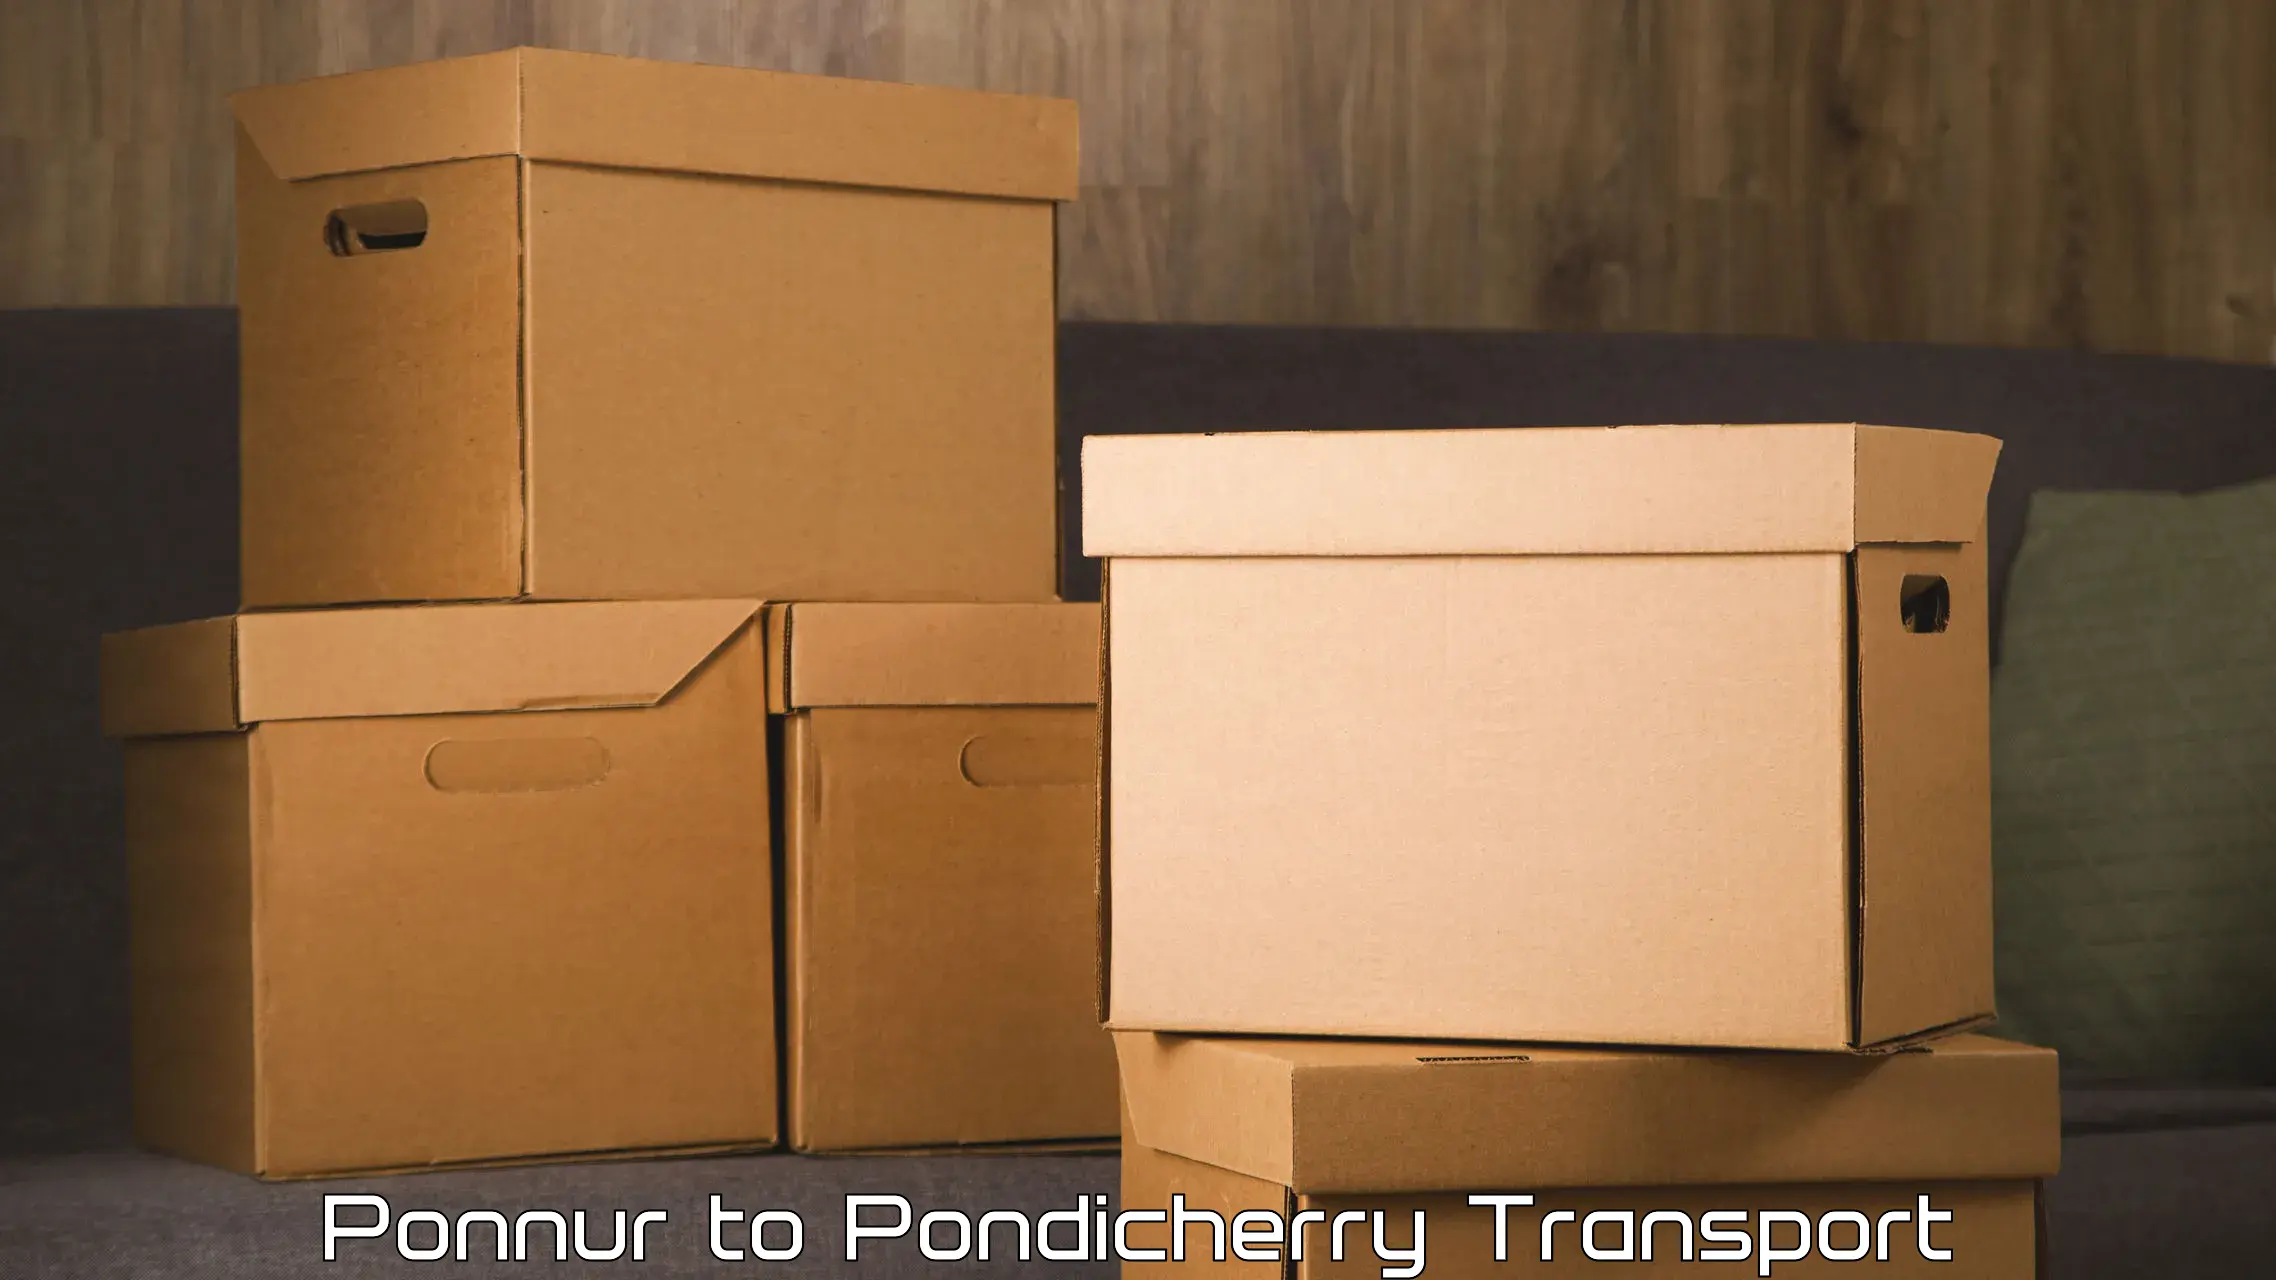 Two wheeler transport services Ponnur to Pondicherry